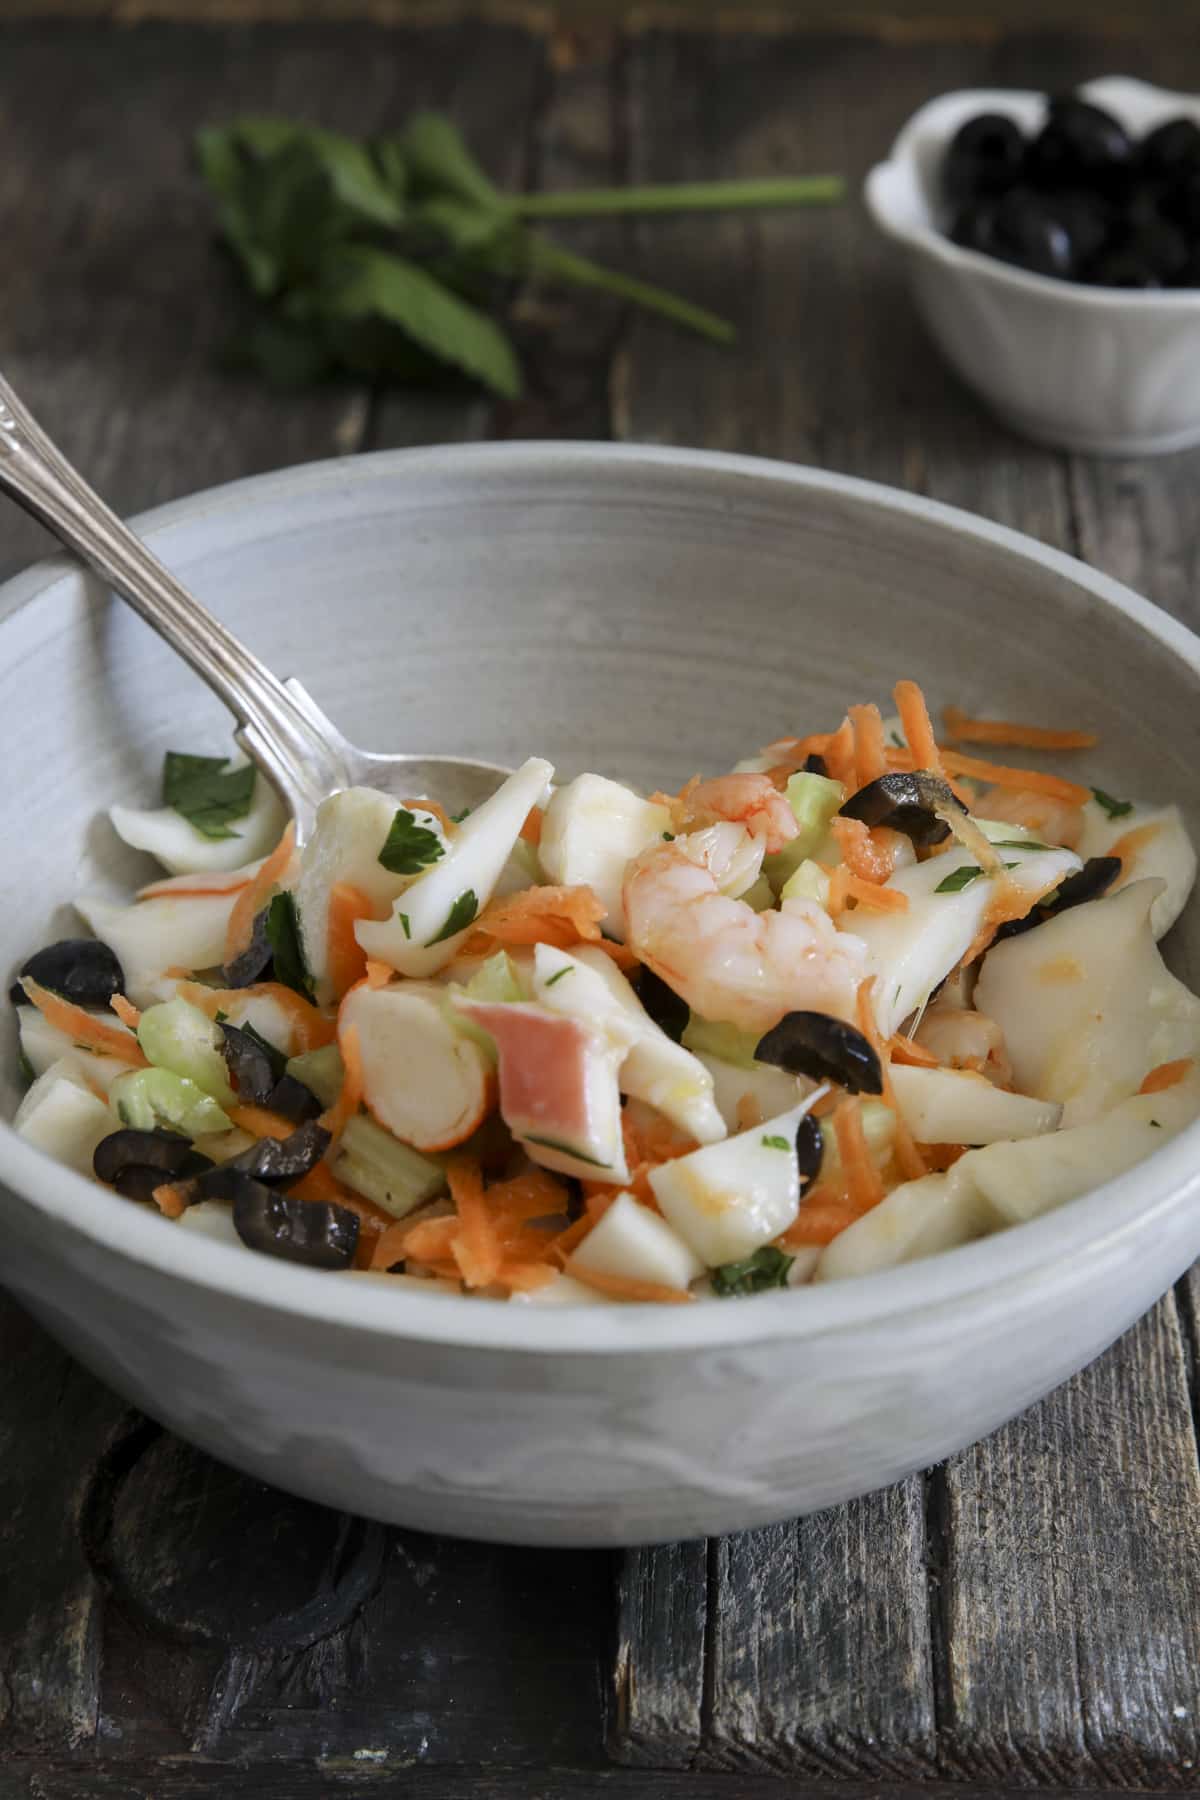 Italian Seafood Salad